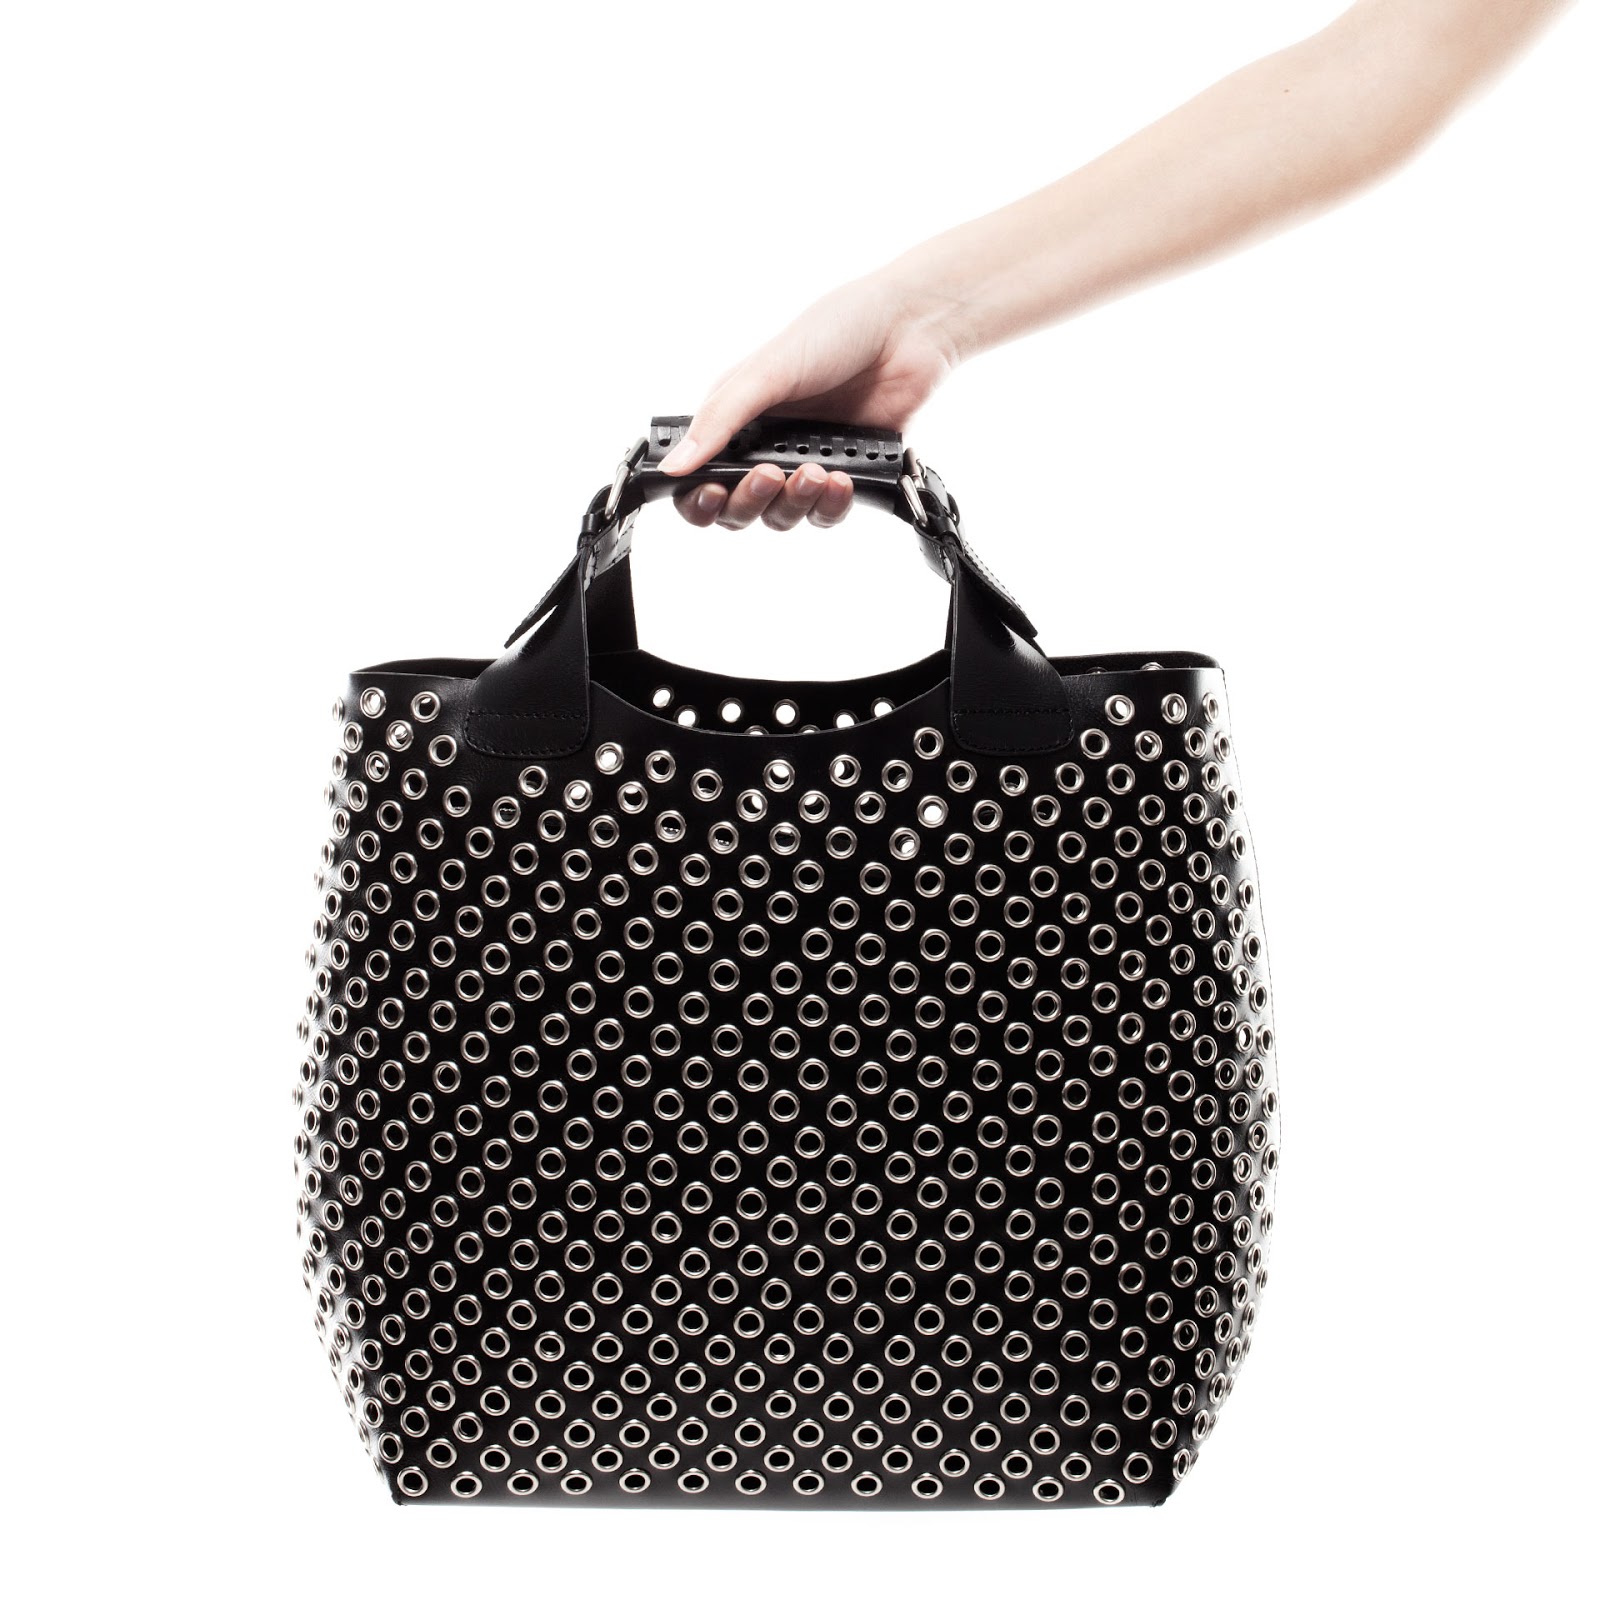 London Personal Shopper: Zara Updated tote bag.